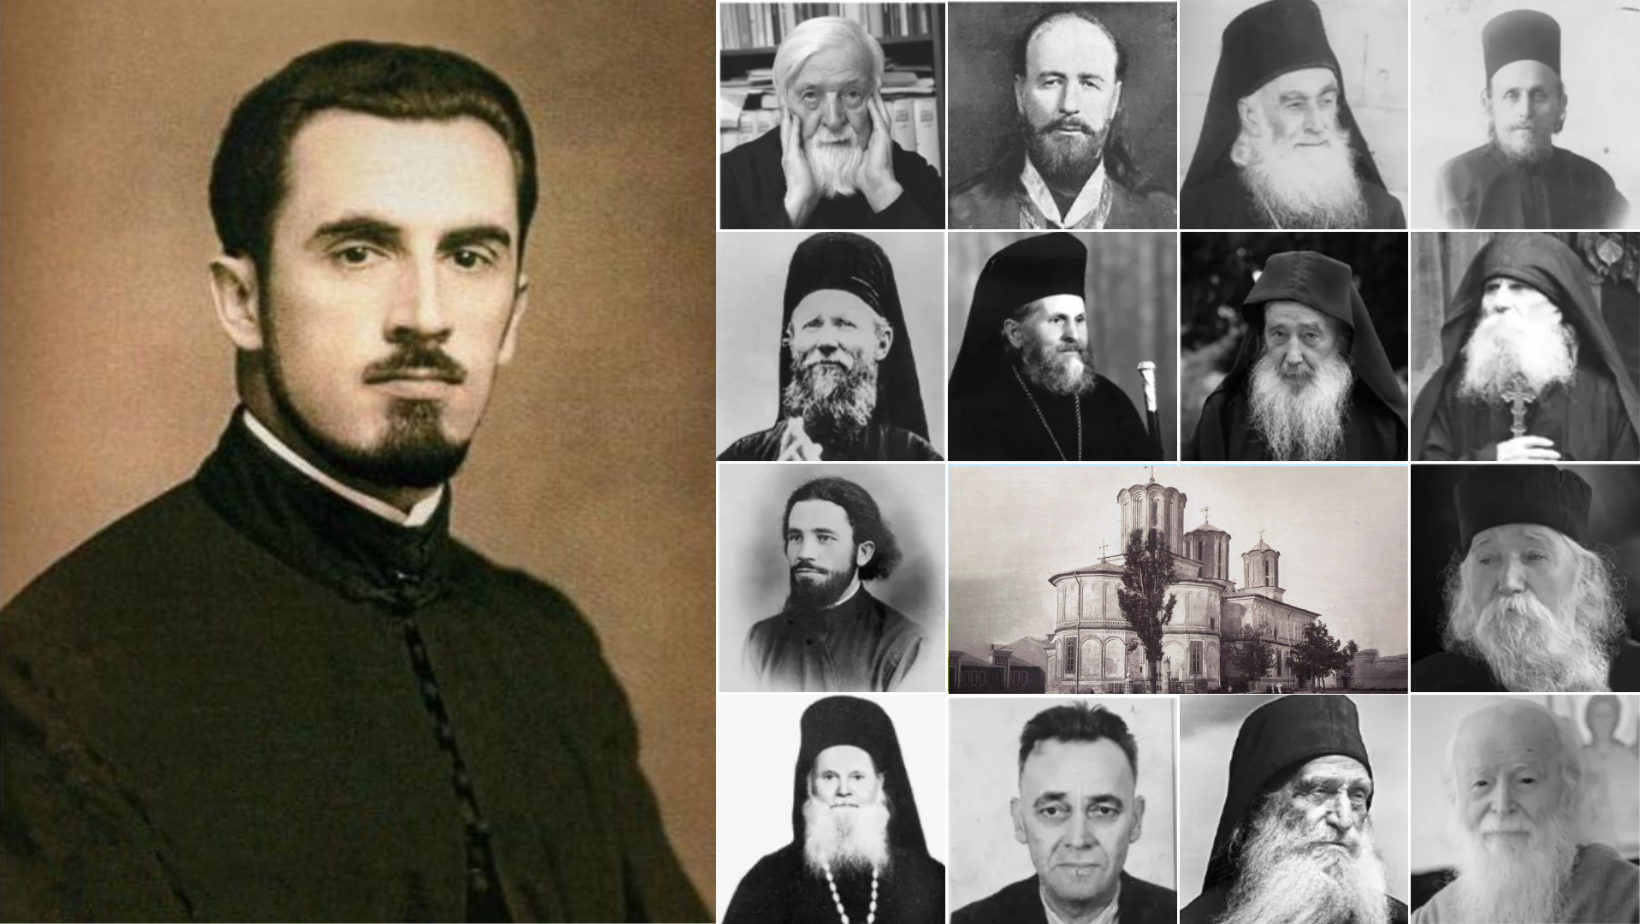 Părintele Ilarion Felea, printre cei 15 cuvioși și mărturisitori propuși spre canonizare în Anul Centenar al Patriarhiei Române (2025)